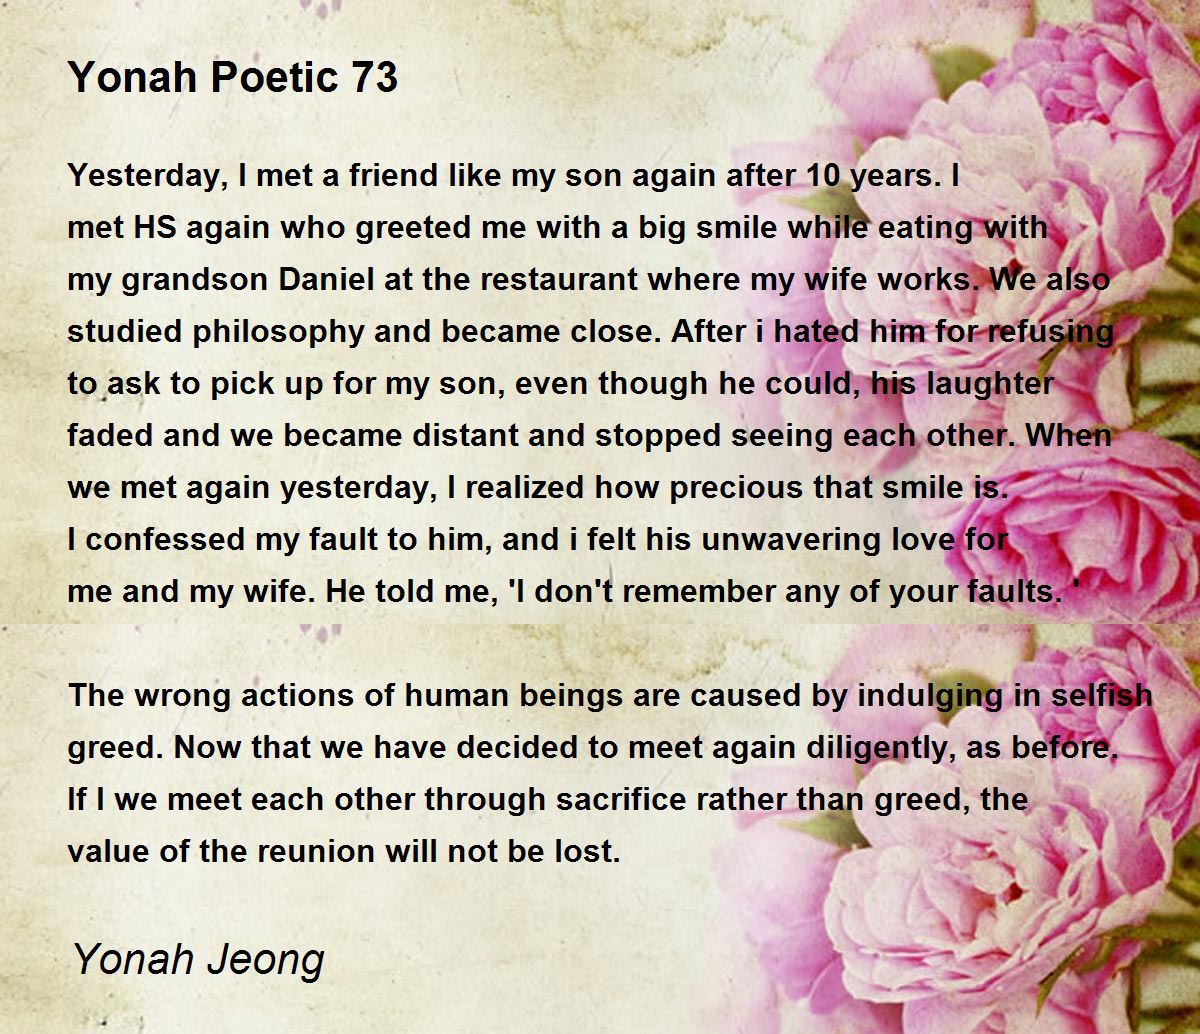 yonah-poetic-73.jpg